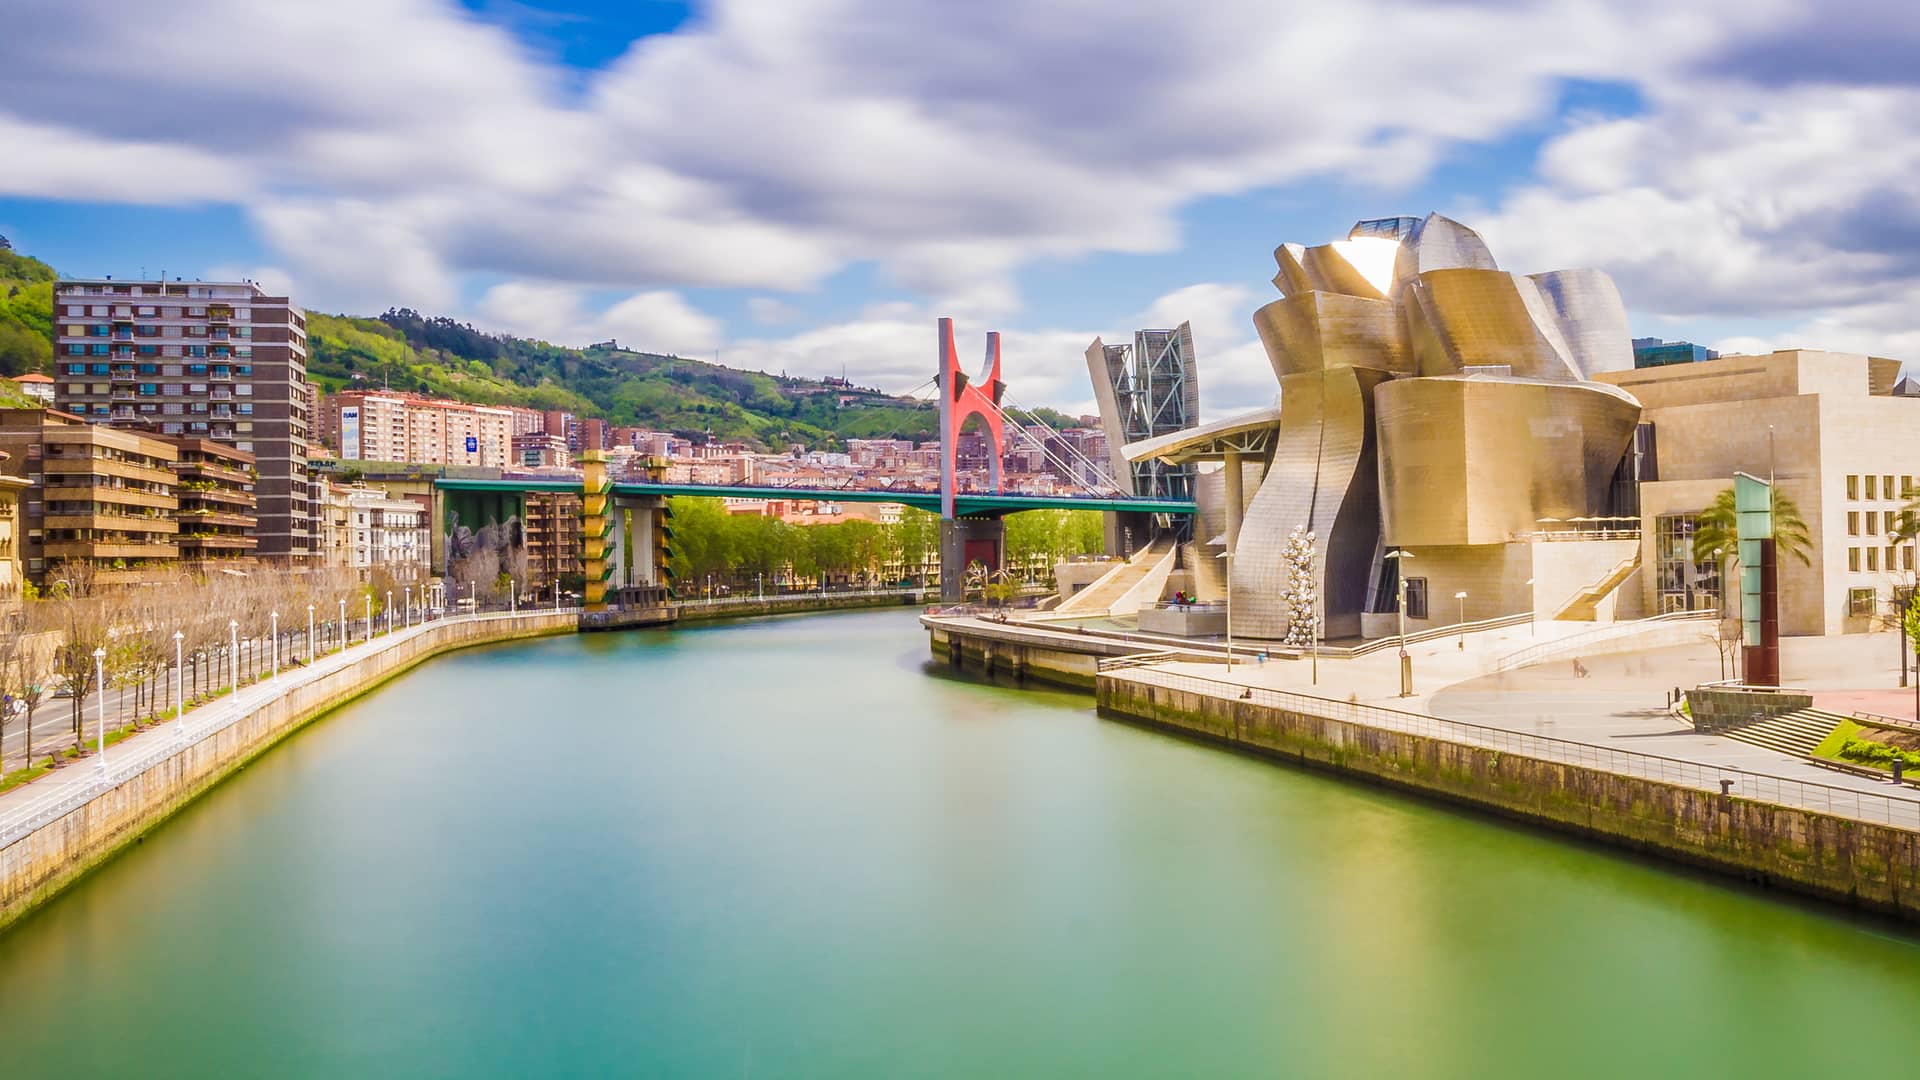 Paisaje urbano de Bilbao donde hay disponible guuk